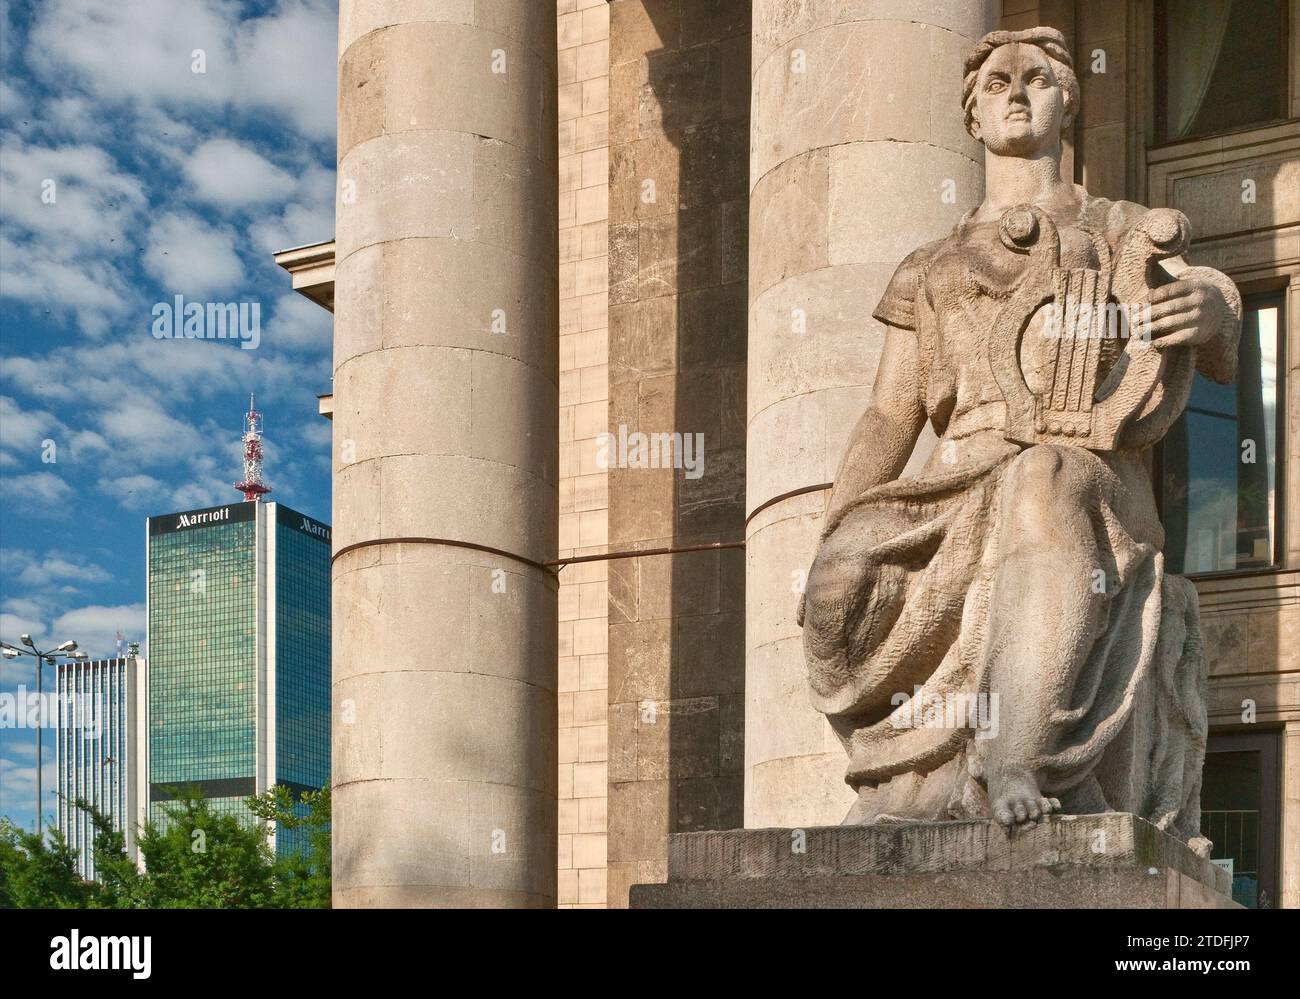 Statua in stile socialista-realista di musa eroica al Palazzo della Cultura e della Scienza, simbolo della dominazione sovietica del passato, Varsavia, Polonia Foto Stock